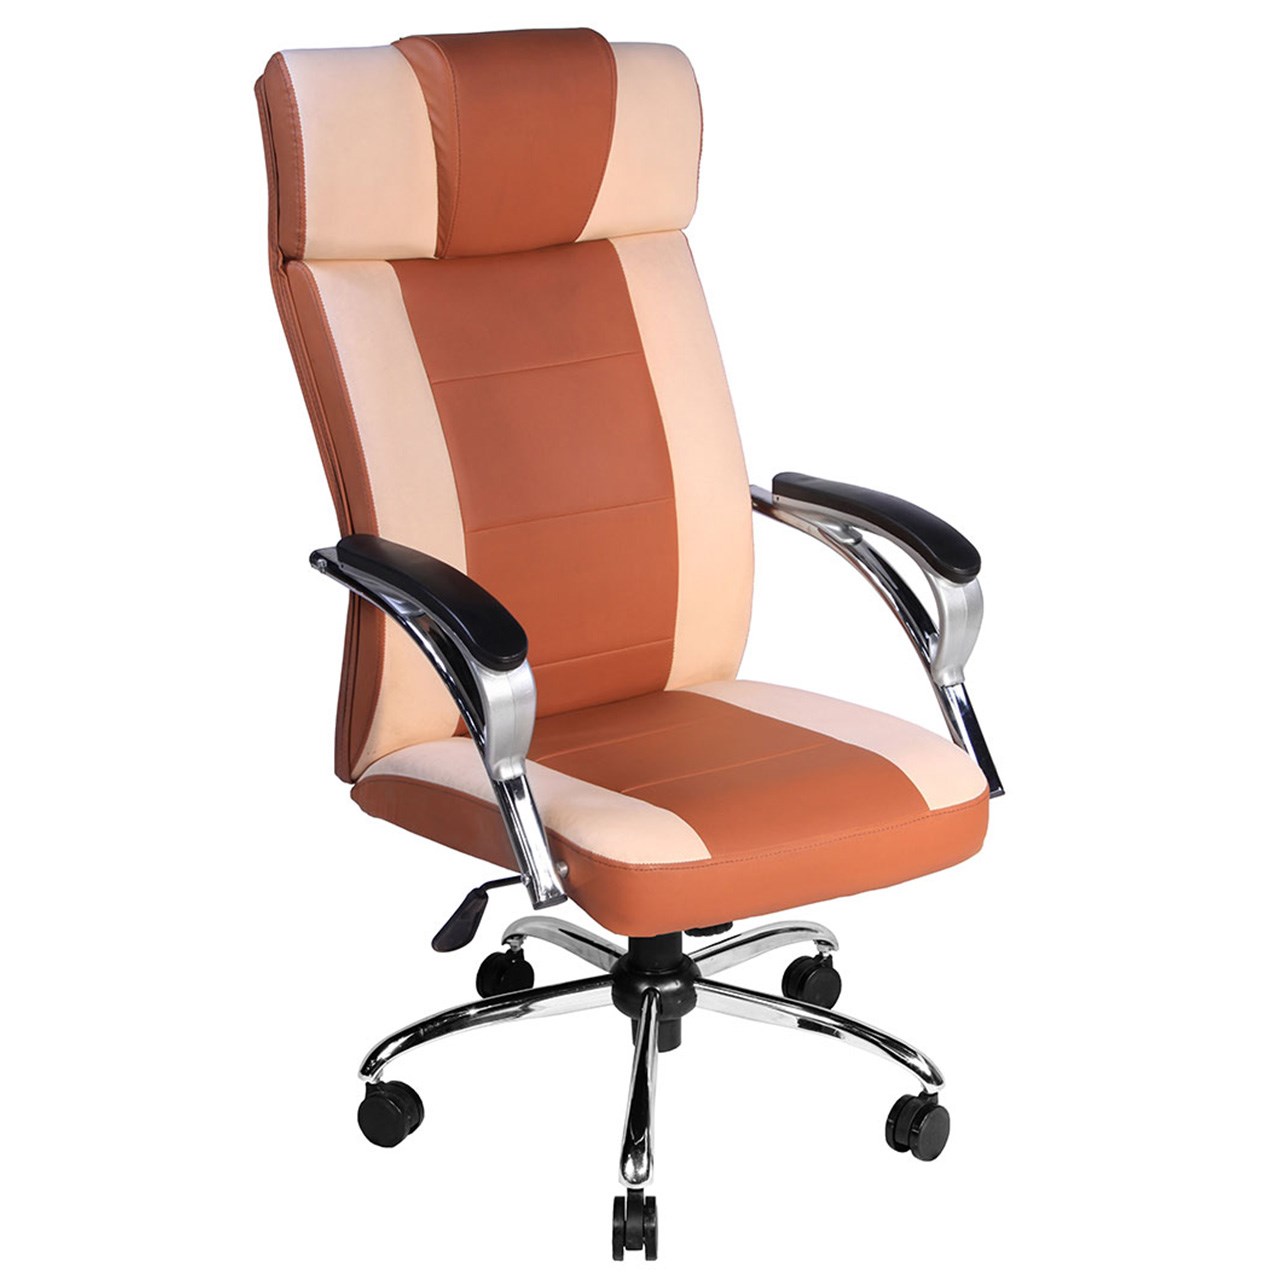 صندلی اداری نوین سیستم مدل 2015 چرمی